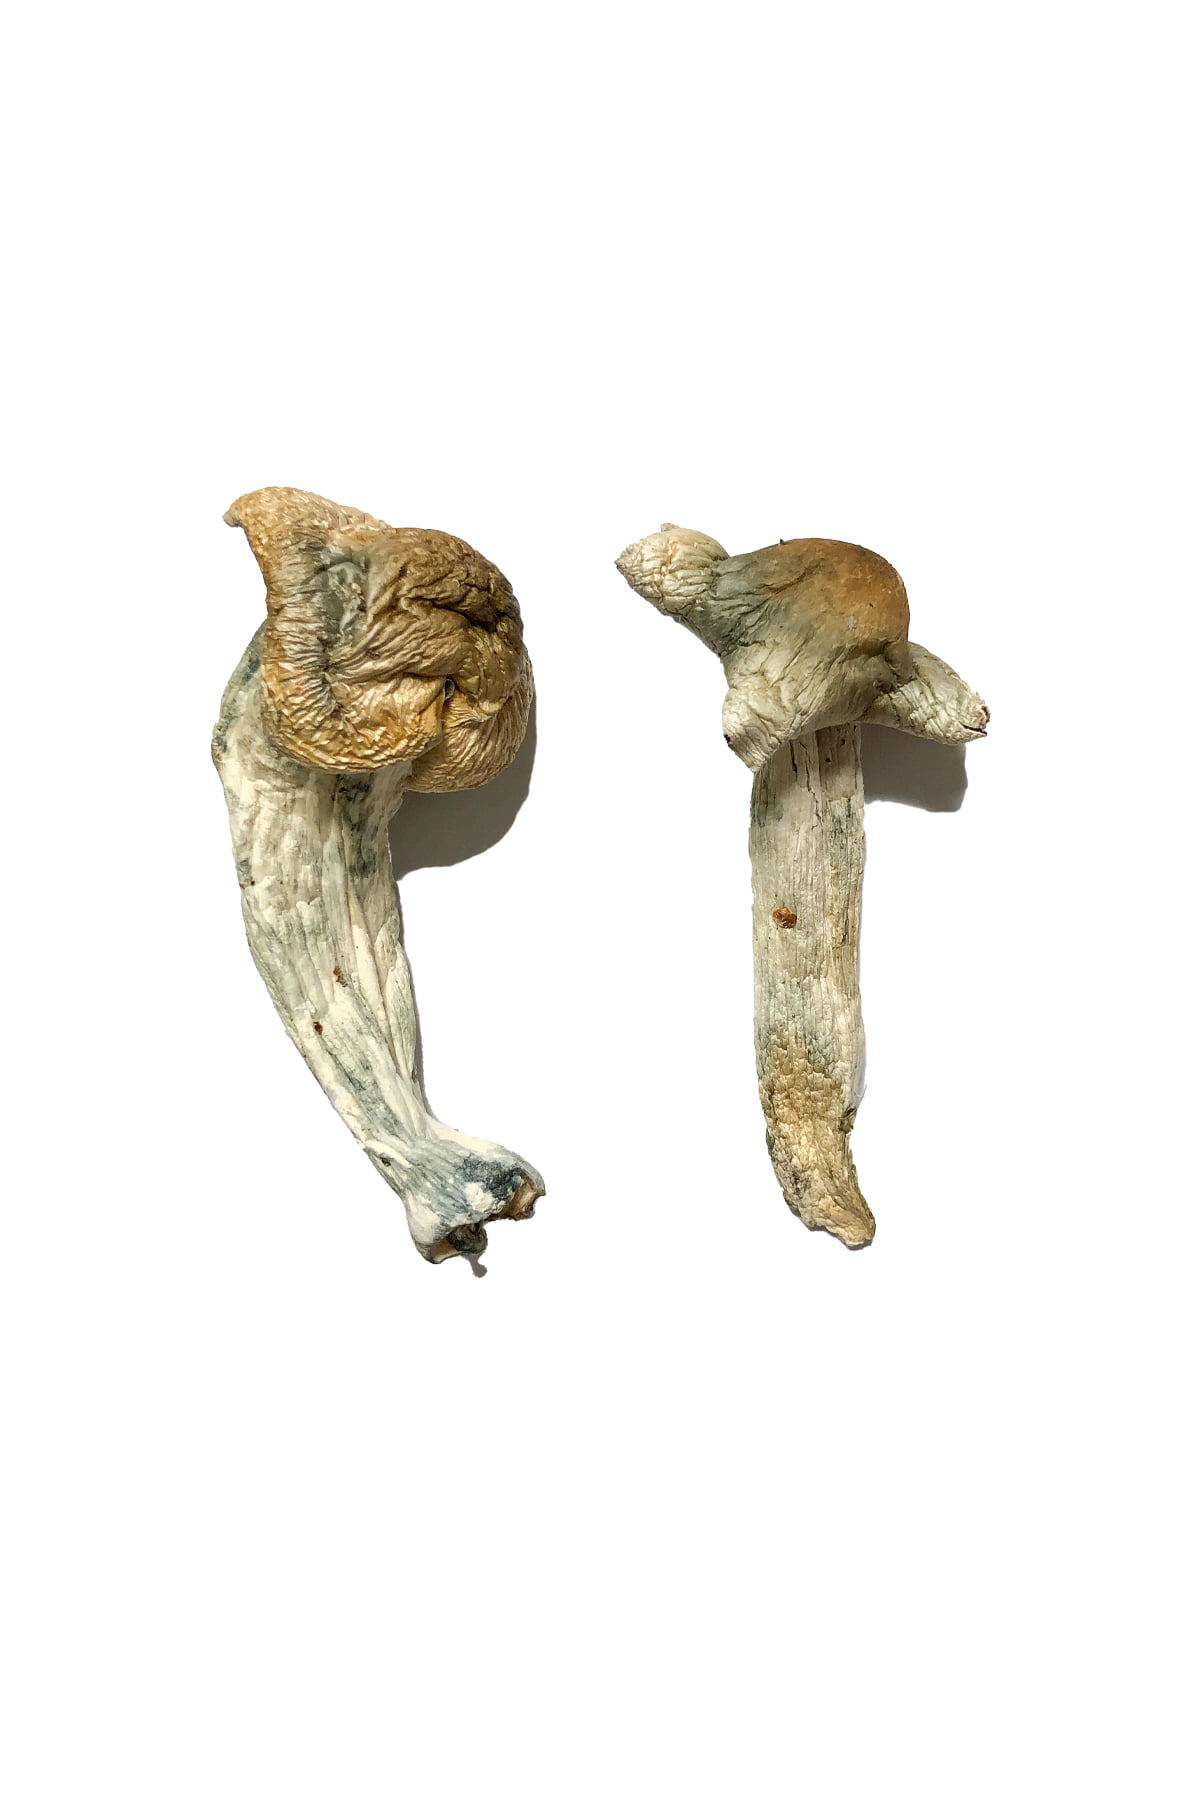 Sheperds Cut Penis Envy Magic Mushrooms